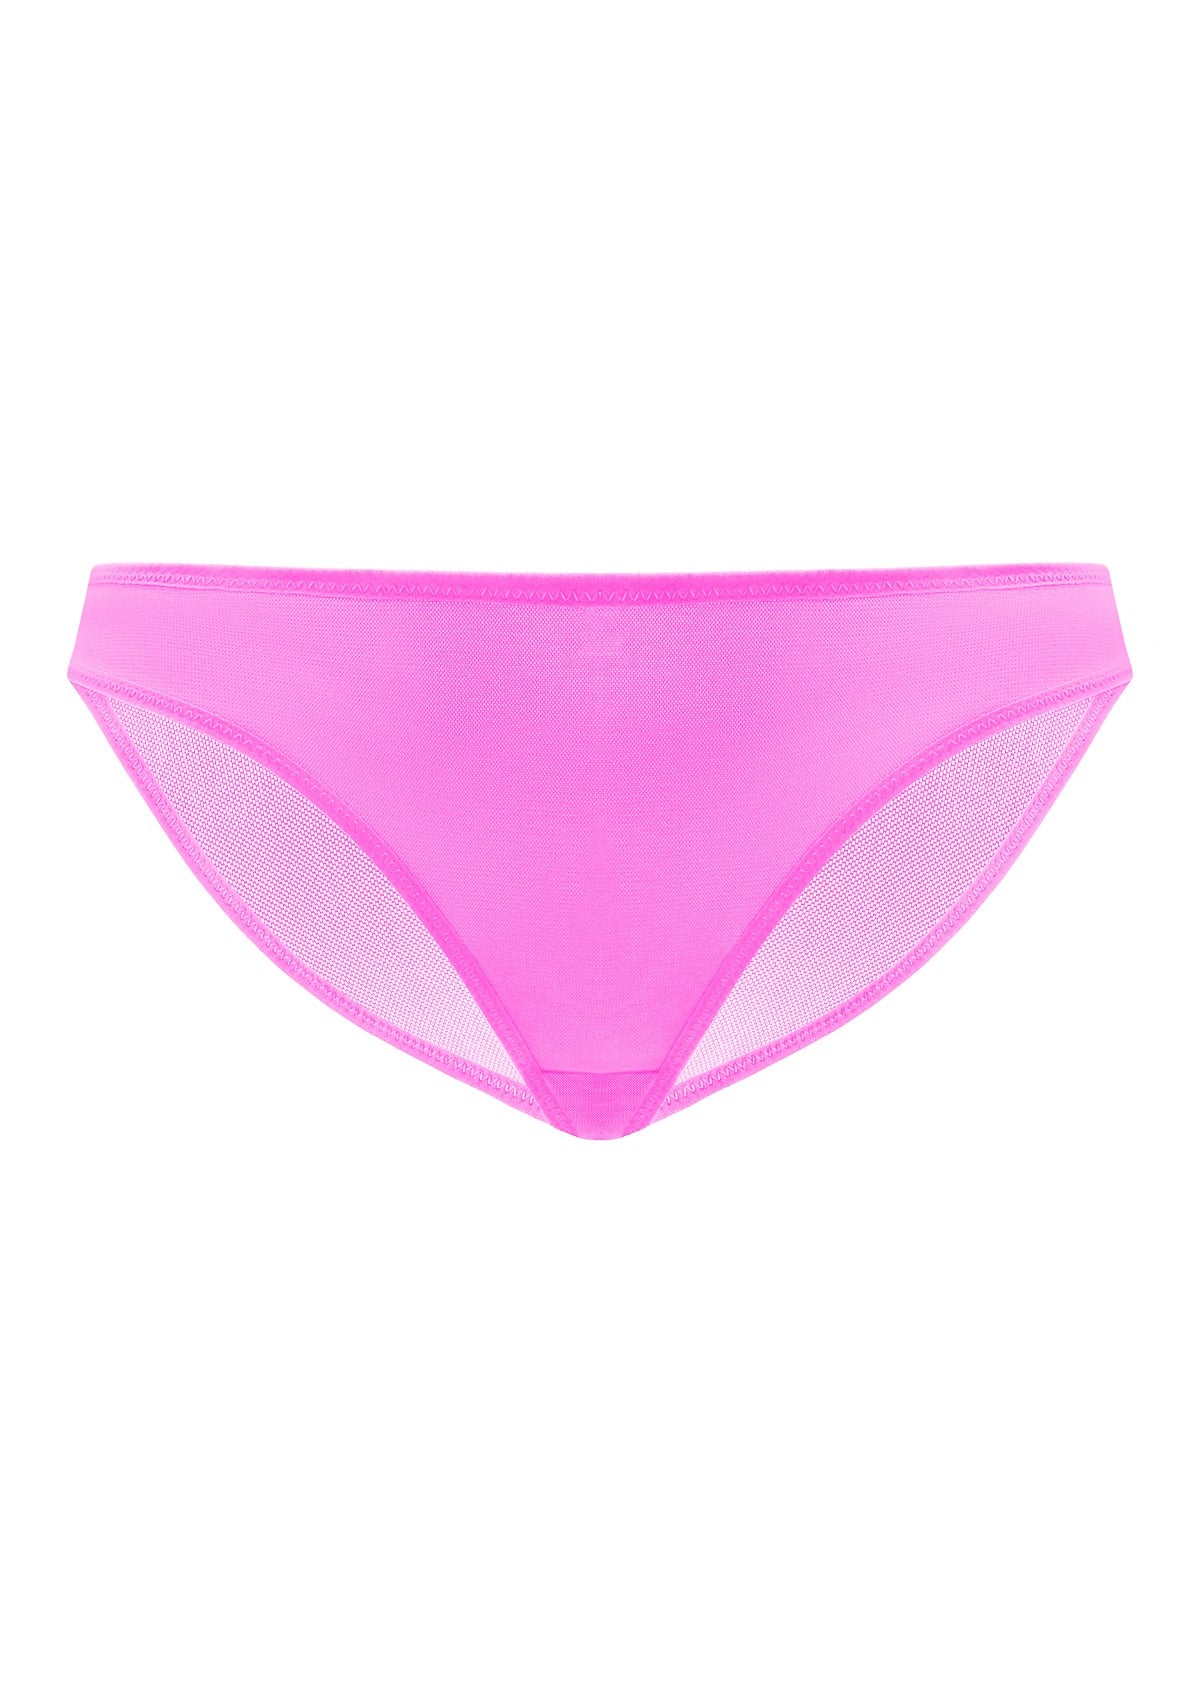 HSIA Billie Smooth Sheer Mesh Lightweight Soft Comfy Bikini Underwear - XXL / Dark Green